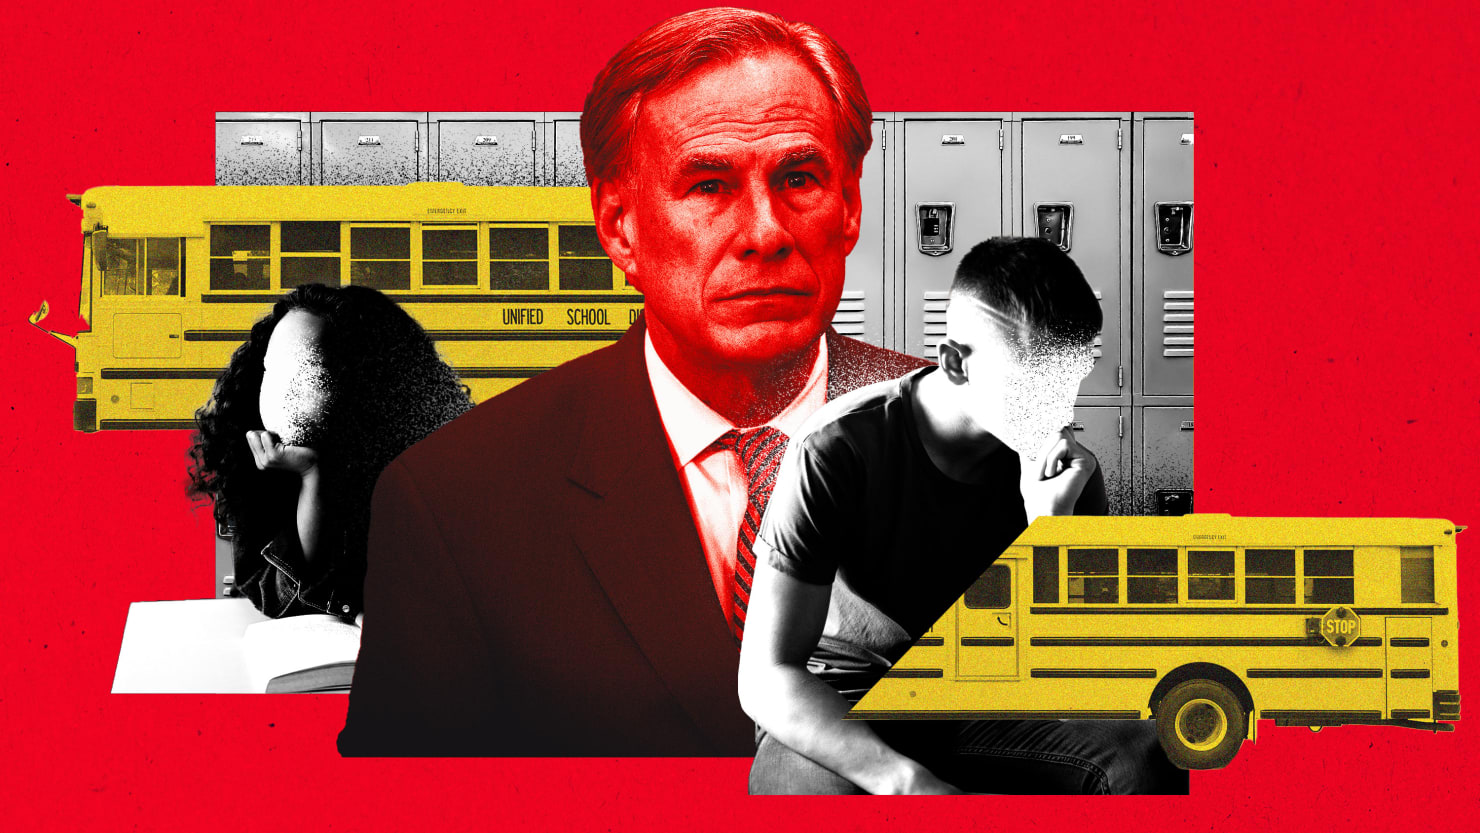 El plan del gobernador Greg Abbott para expulsar a los niños indocumentados de las escuelas es sádico